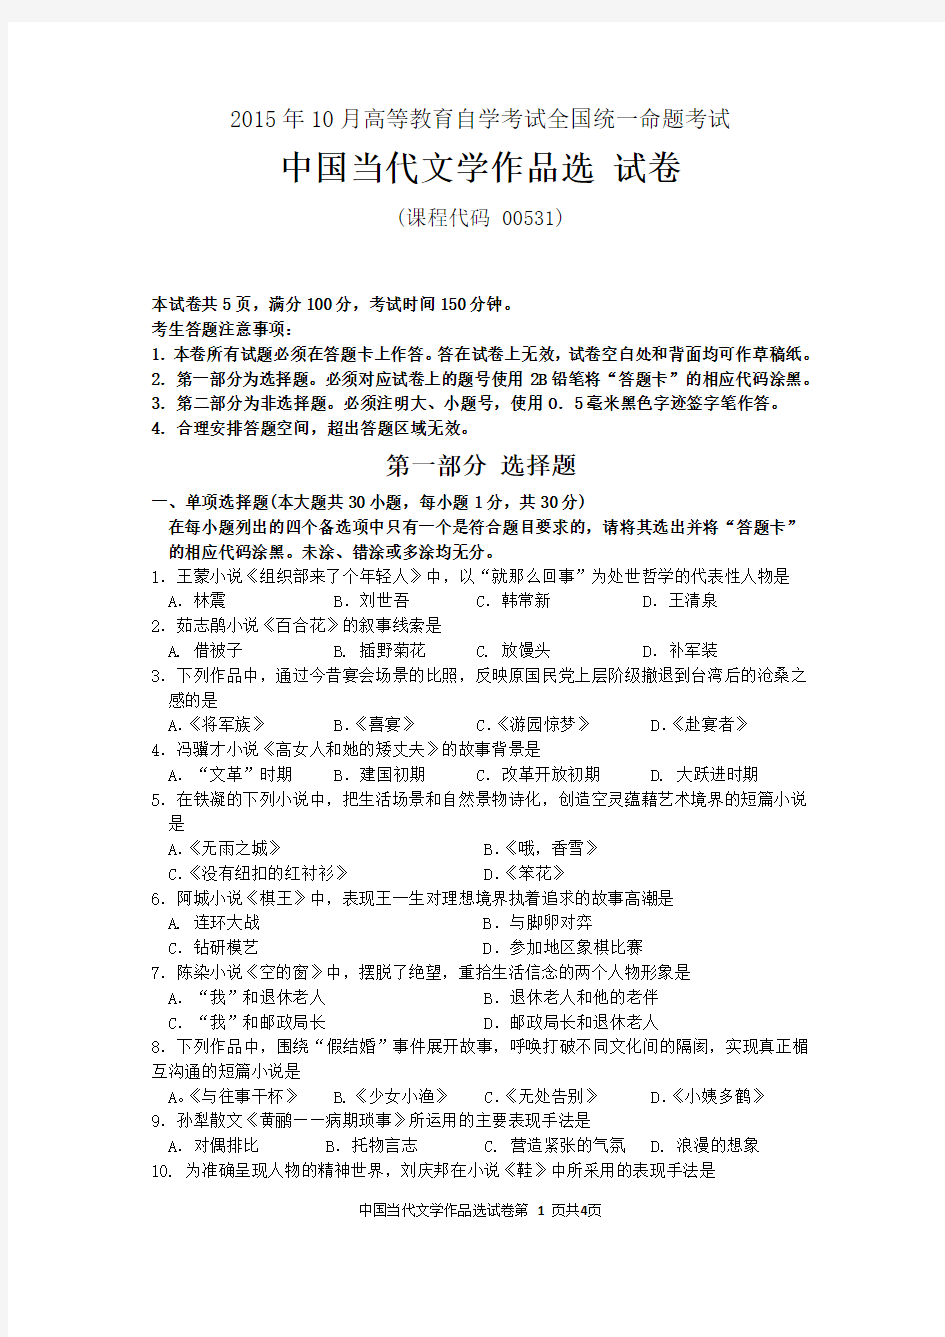 61自考中国当代文学作品选(00531)试题及答案解析与评分标准